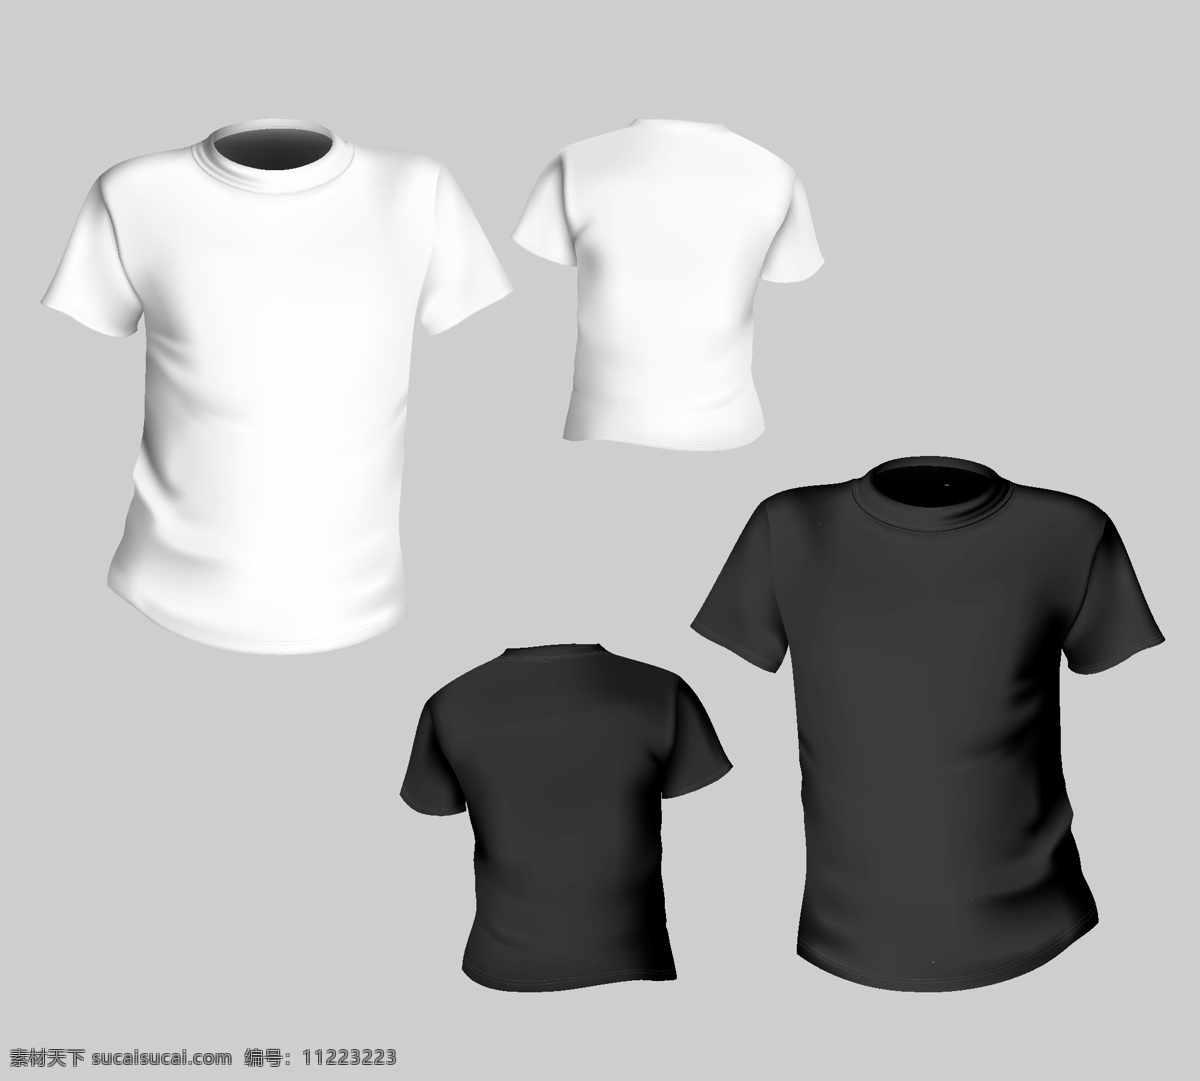 服装设计 t shirt 矢量 模板下载 效果图 正面 背面 tshirt 其他服装素材